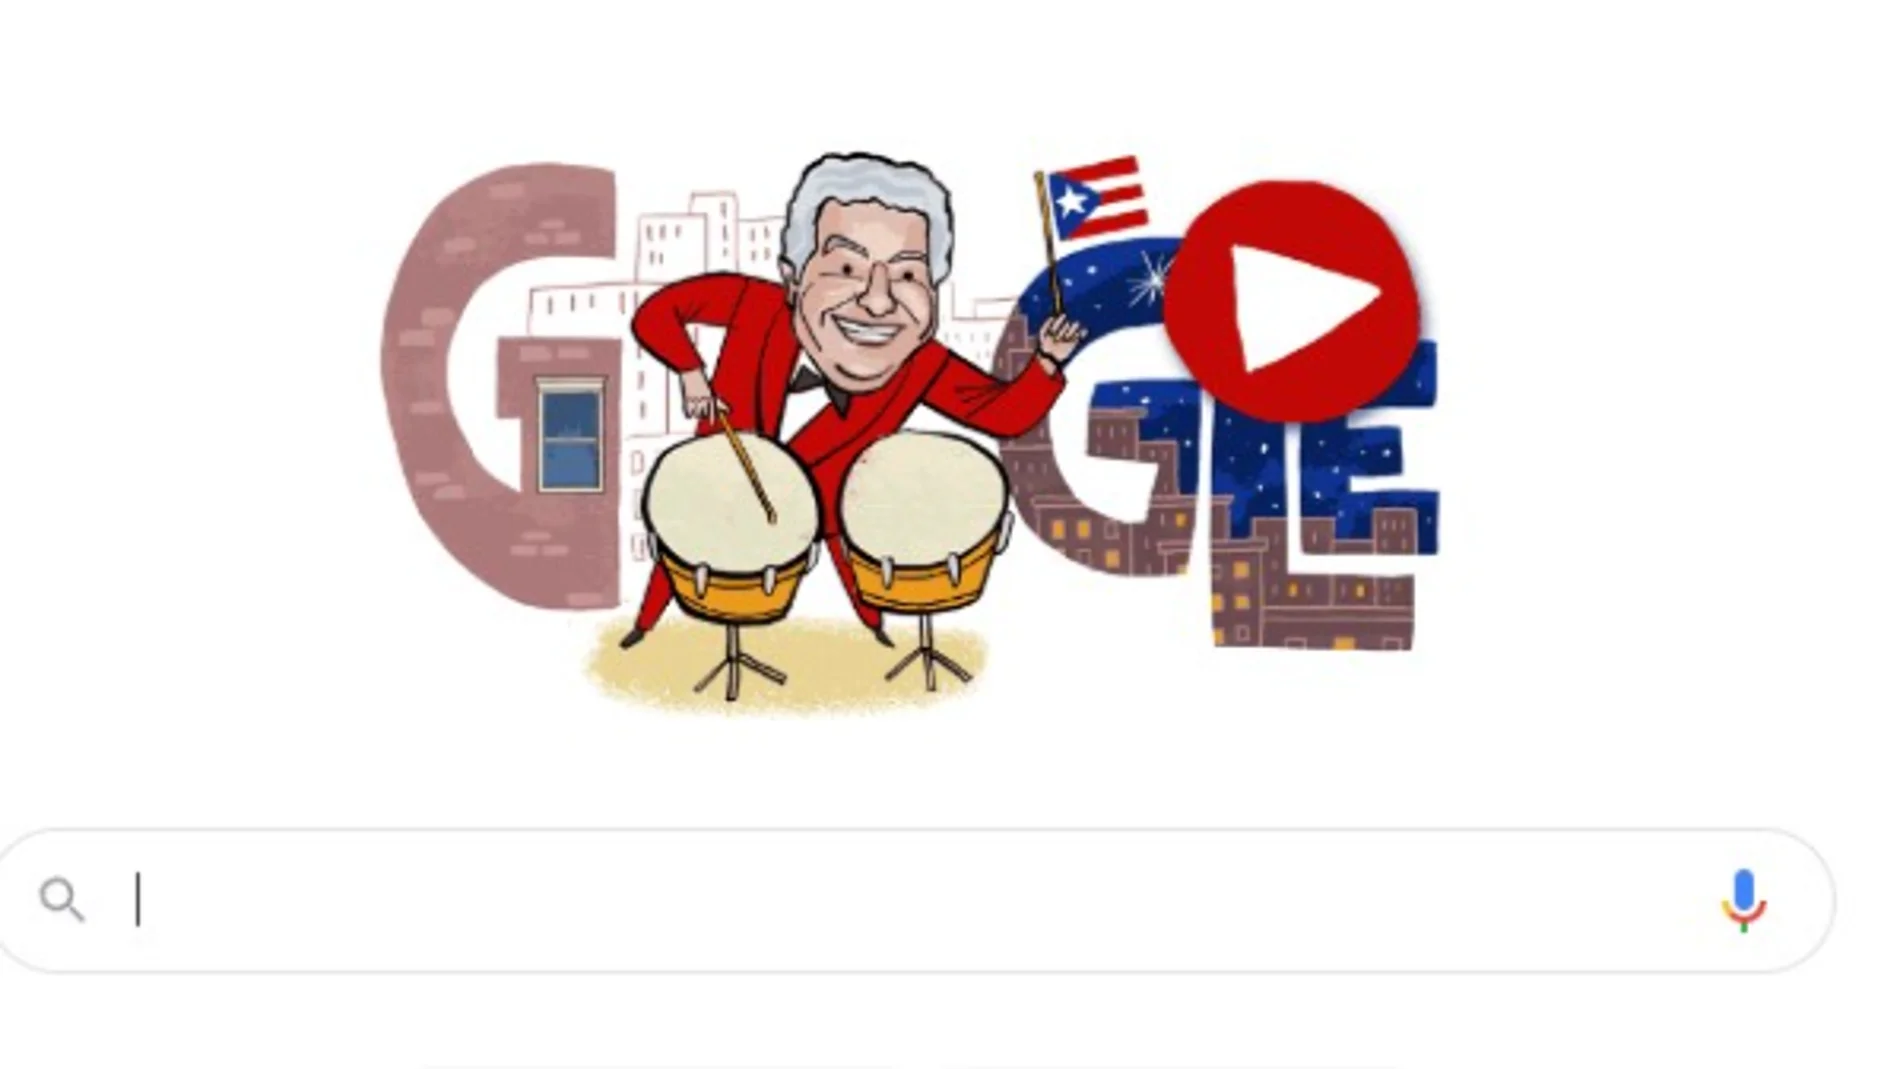 El doodle de Google de Tito Puente